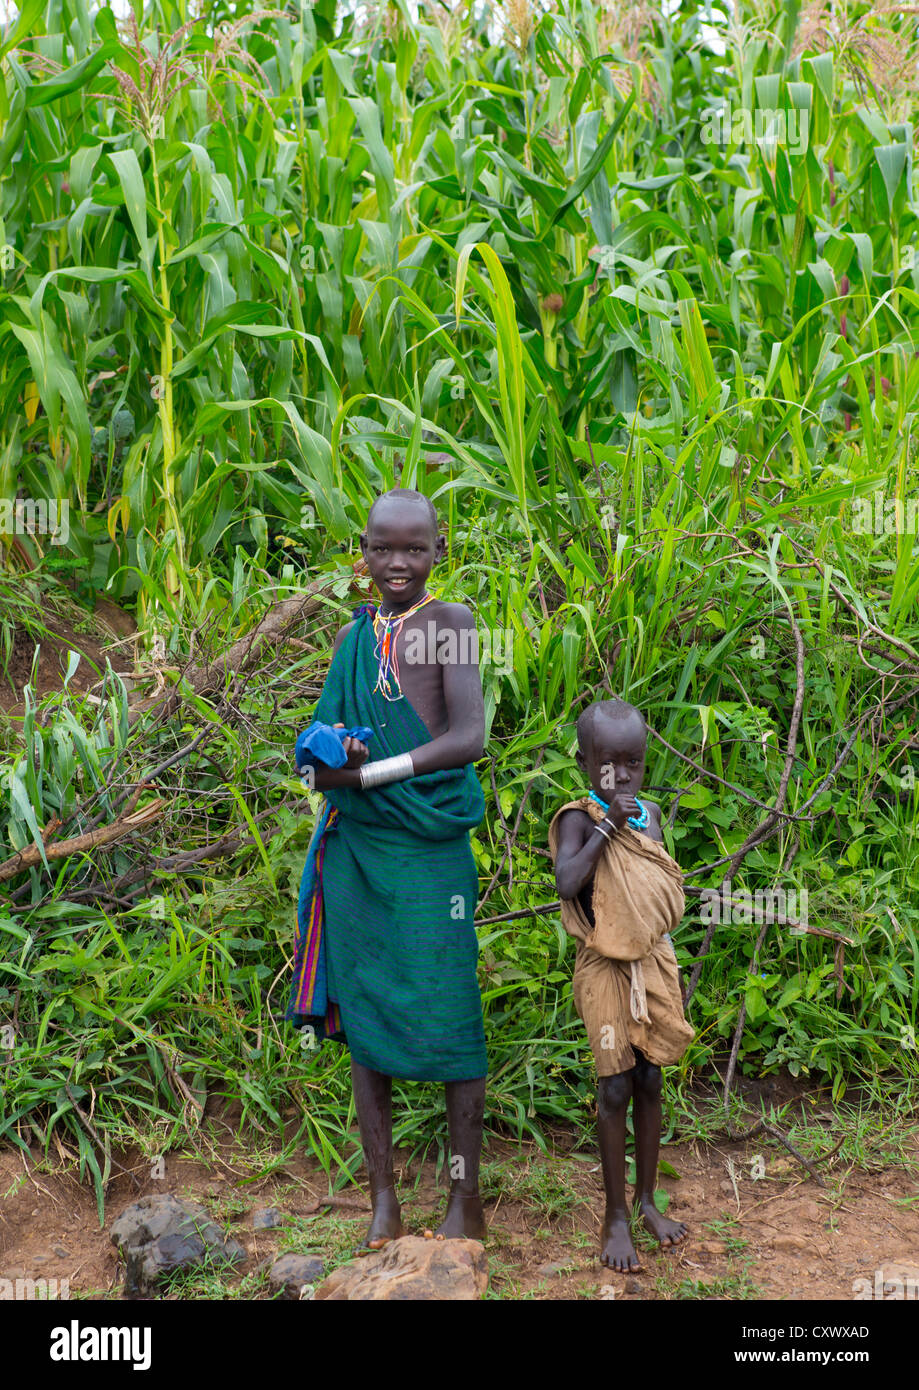 Suri Enfants dans le Koka Plantation, vallée de l'Omo, Ethiopie Banque D'Images